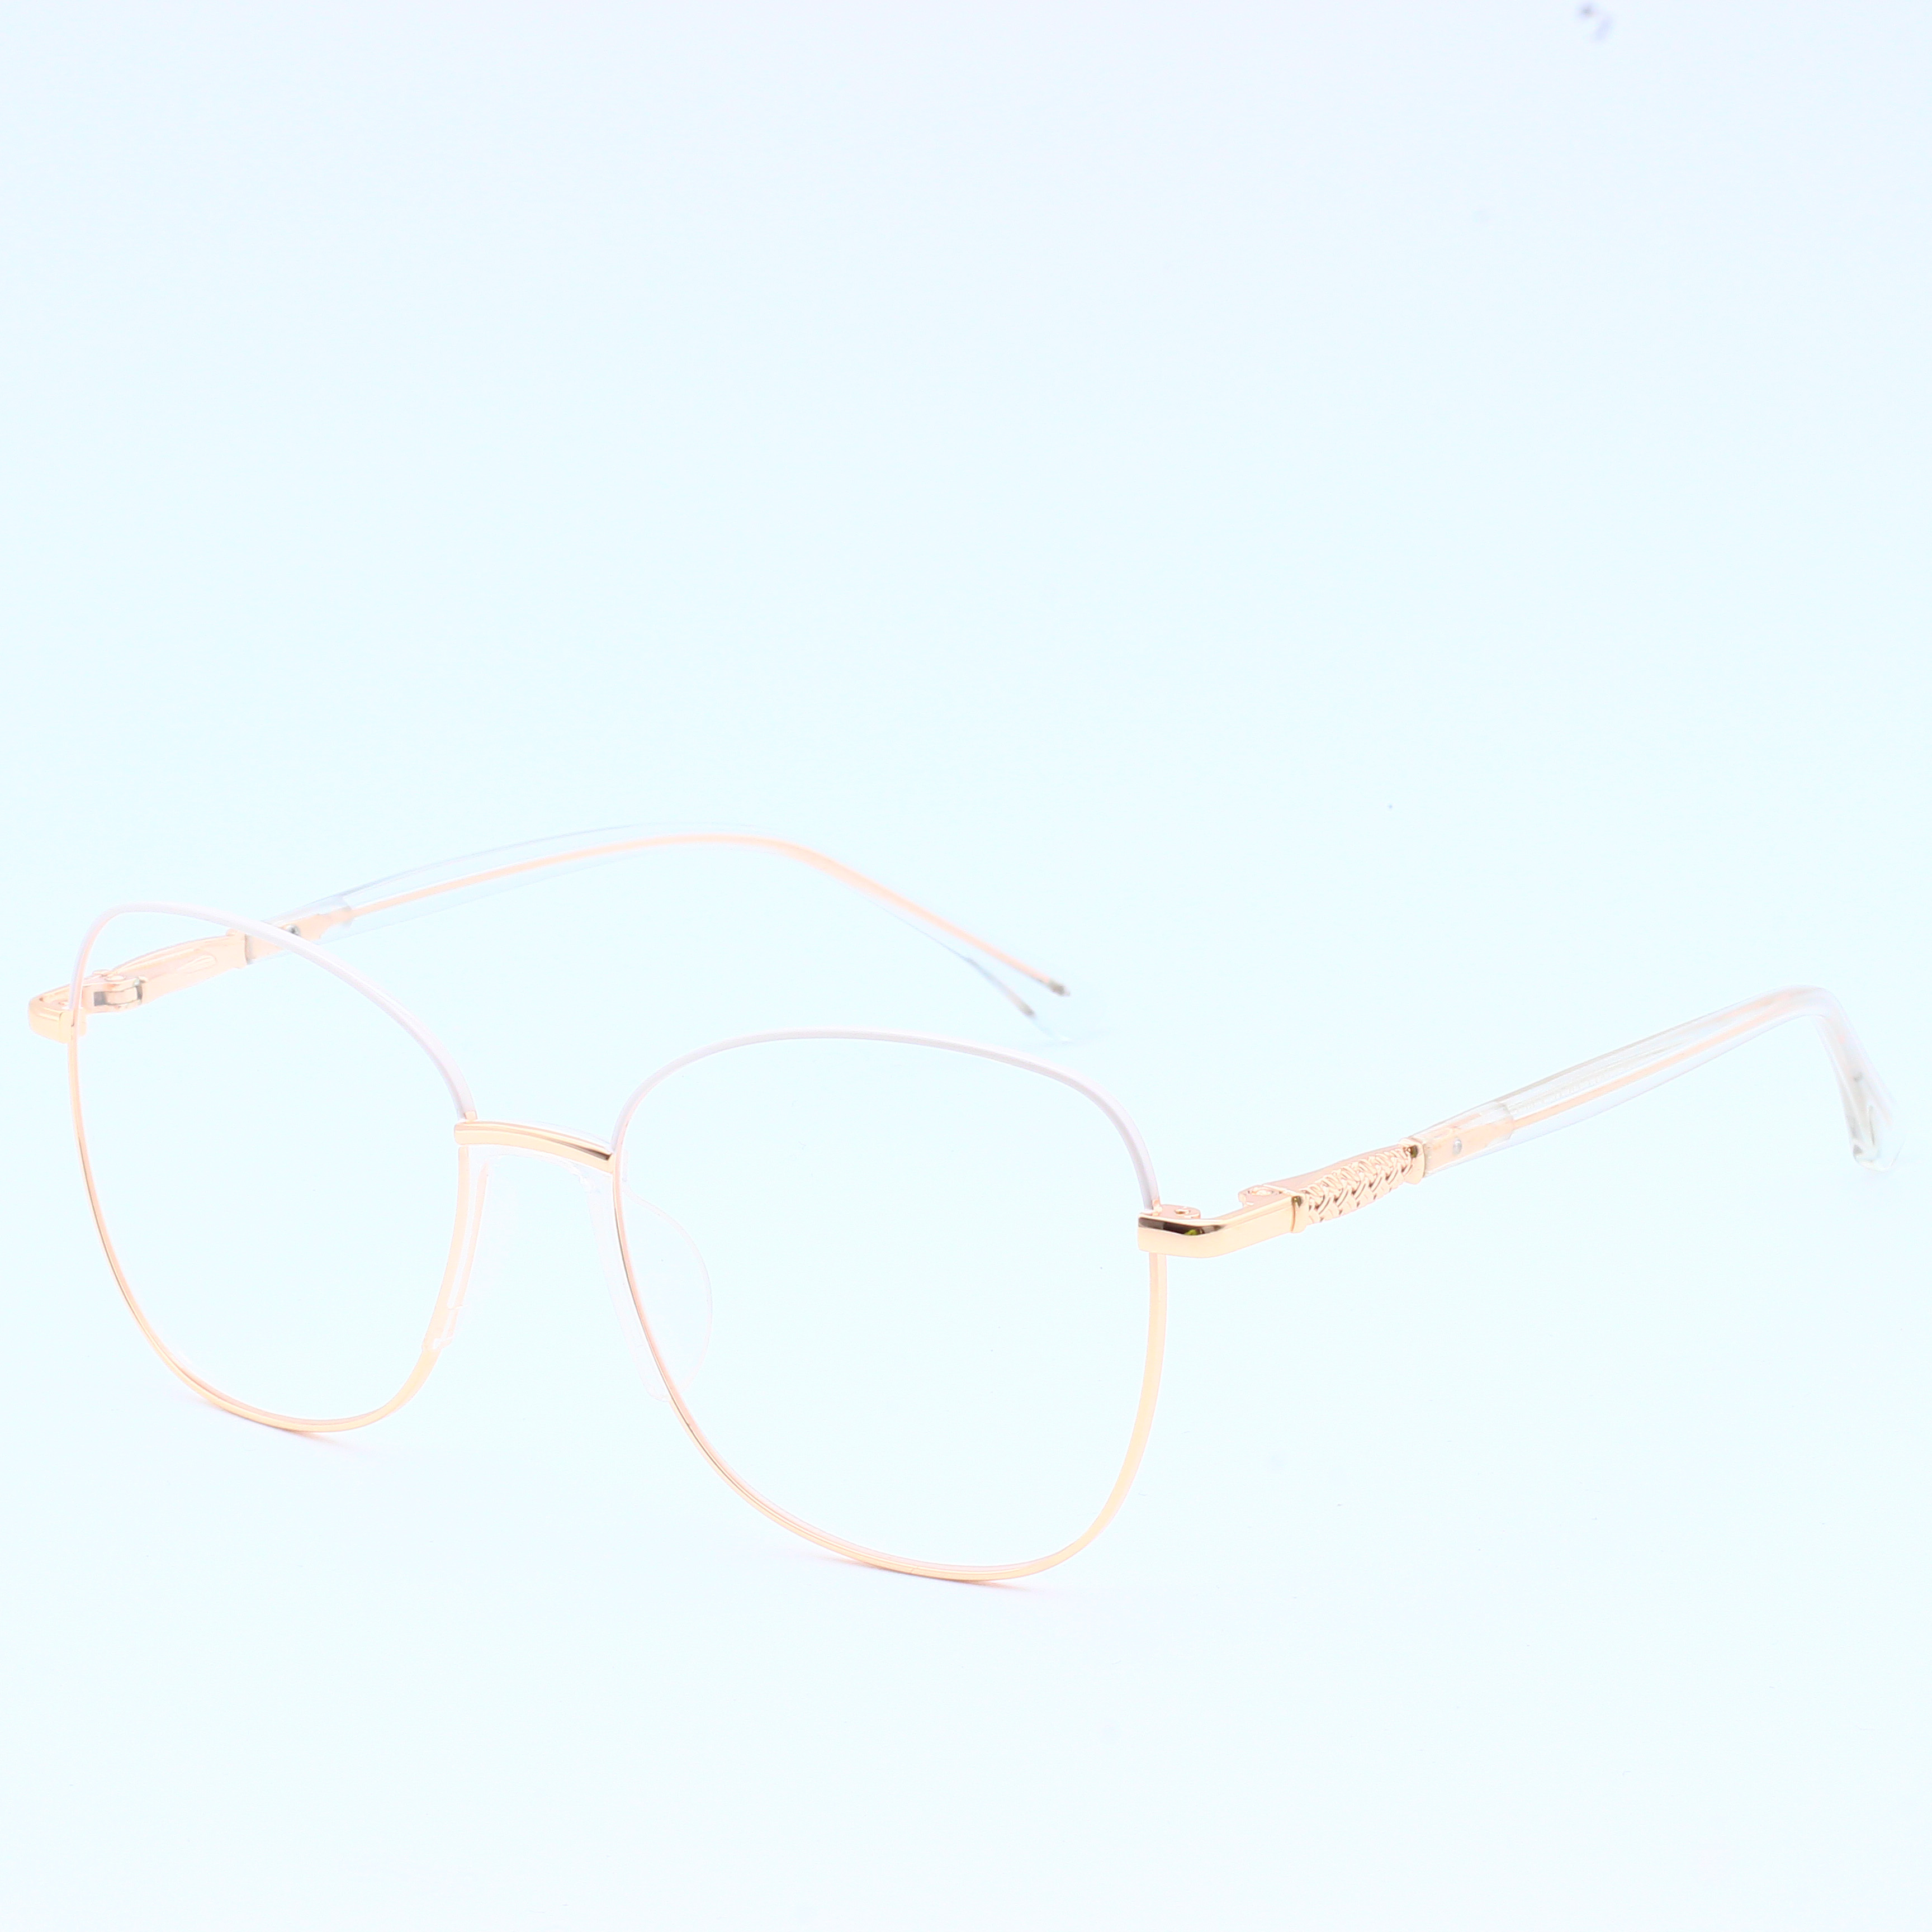 Designer Brand Metal Wholesale Eyeglasses River Optical Frame (6)